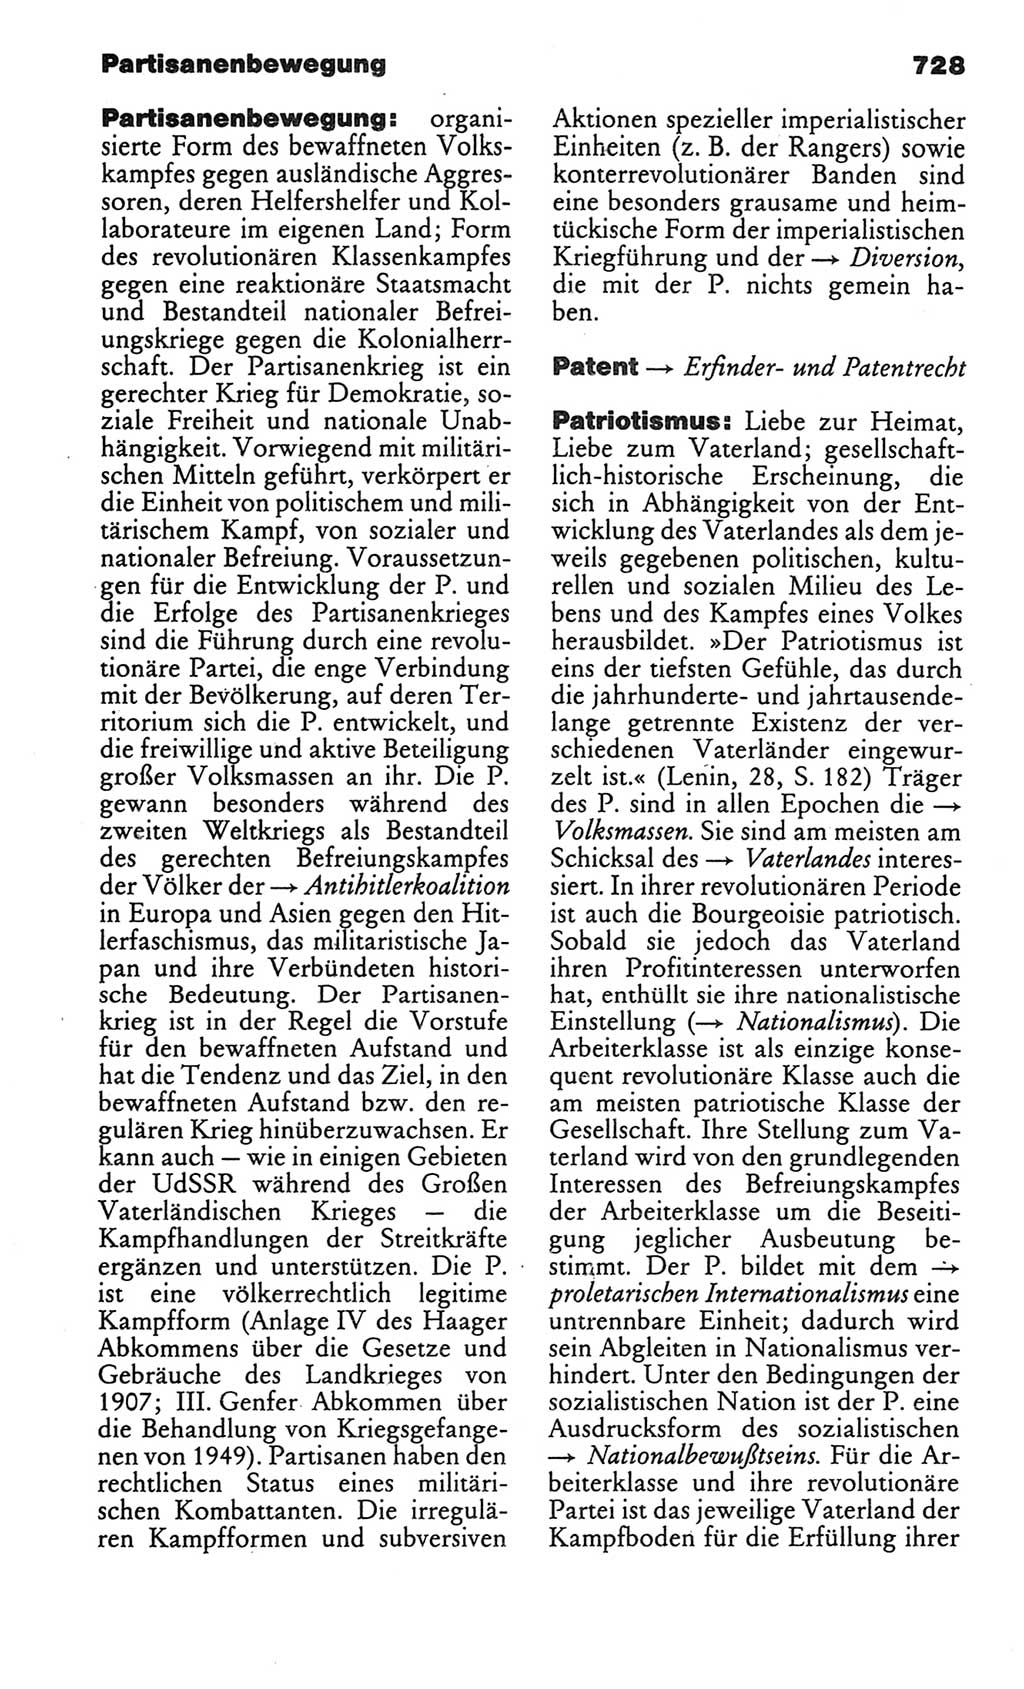 Kleines politisches Wörterbuch [Deutsche Demokratische Republik (DDR)] 1986, Seite 728 (Kl. pol. Wb. DDR 1986, S. 728)